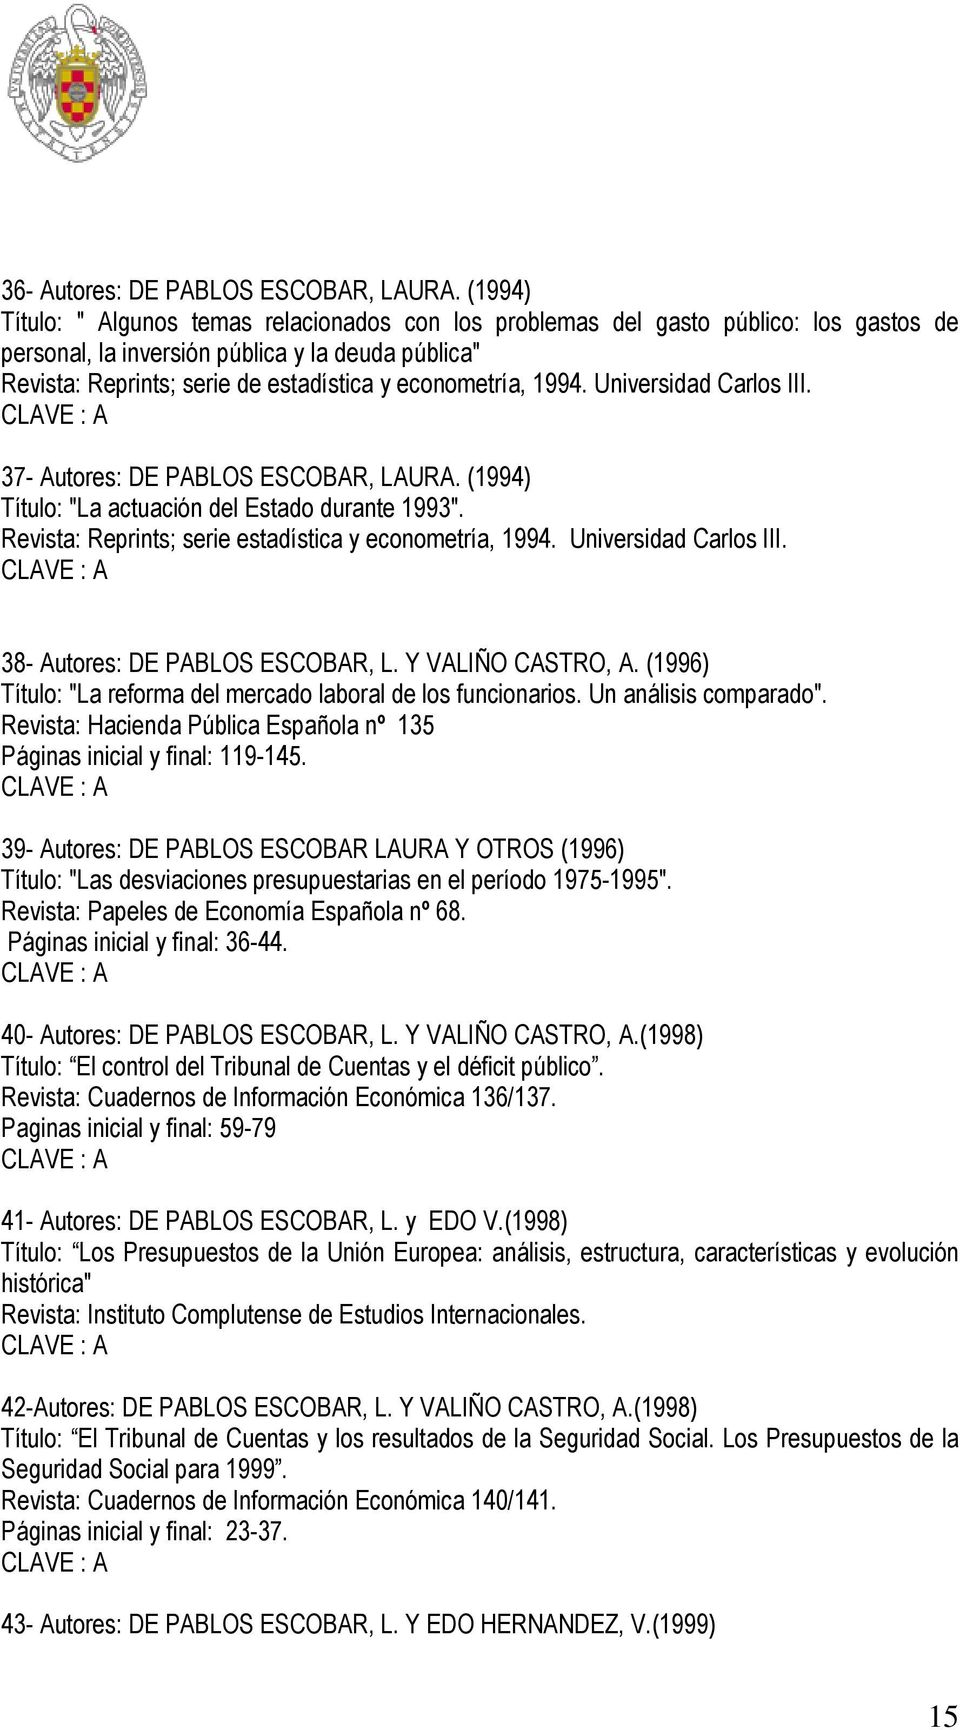 econometría, 1994. Universidad Carlos III. 37- Autores: DE PABLOS ESCOBAR, LAURA. (1994) Título: "La actuación del Estado durante 1993". Revista: Reprints; serie estadística y econometría, 1994.